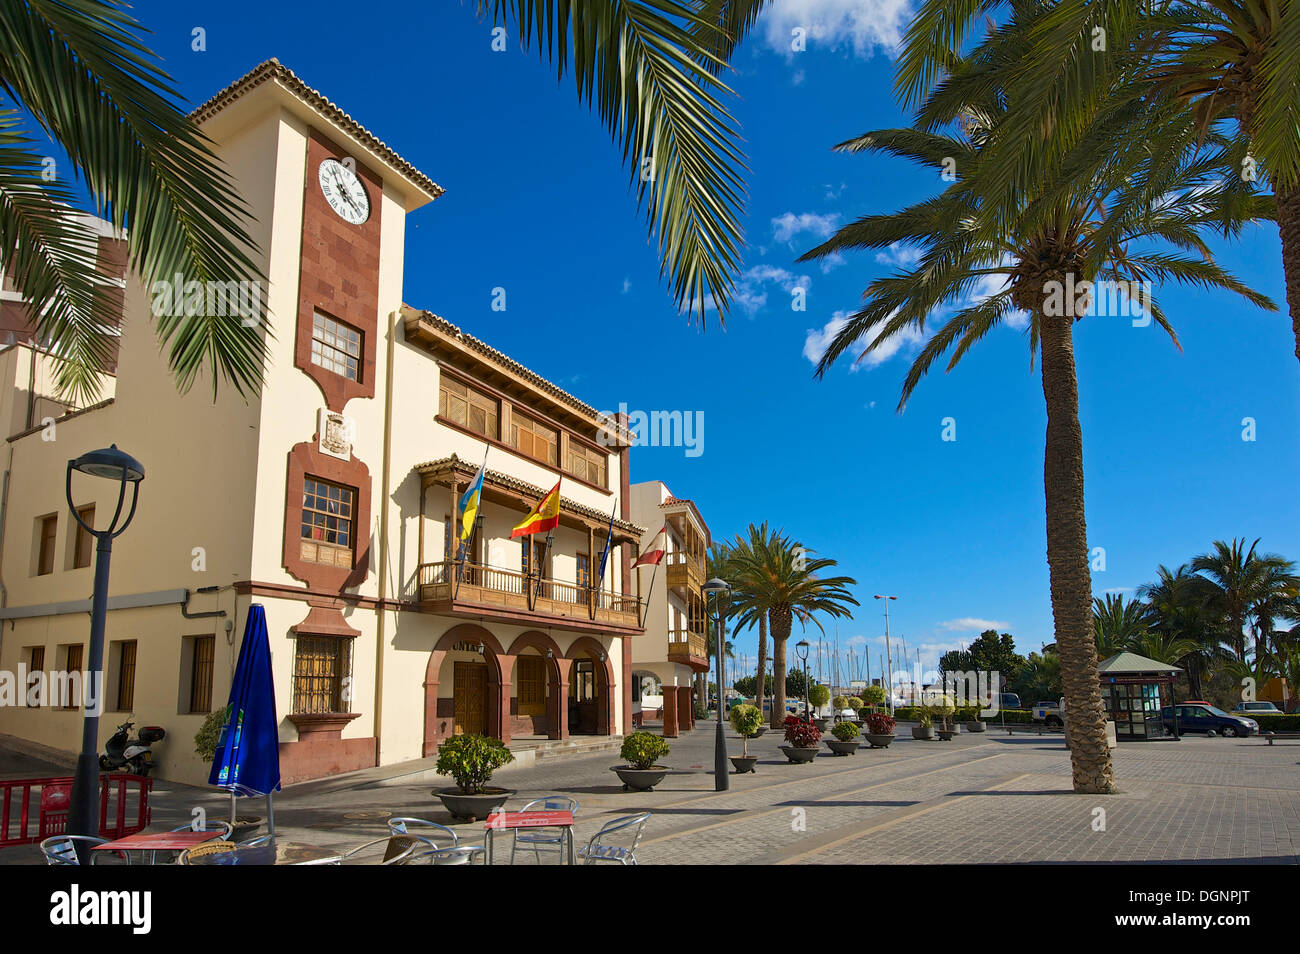 Rathaus am Plaza de Las Americas Quadrat, San Sebastian, La Gomera, Kanarische Inseln, Spanien Stockfoto